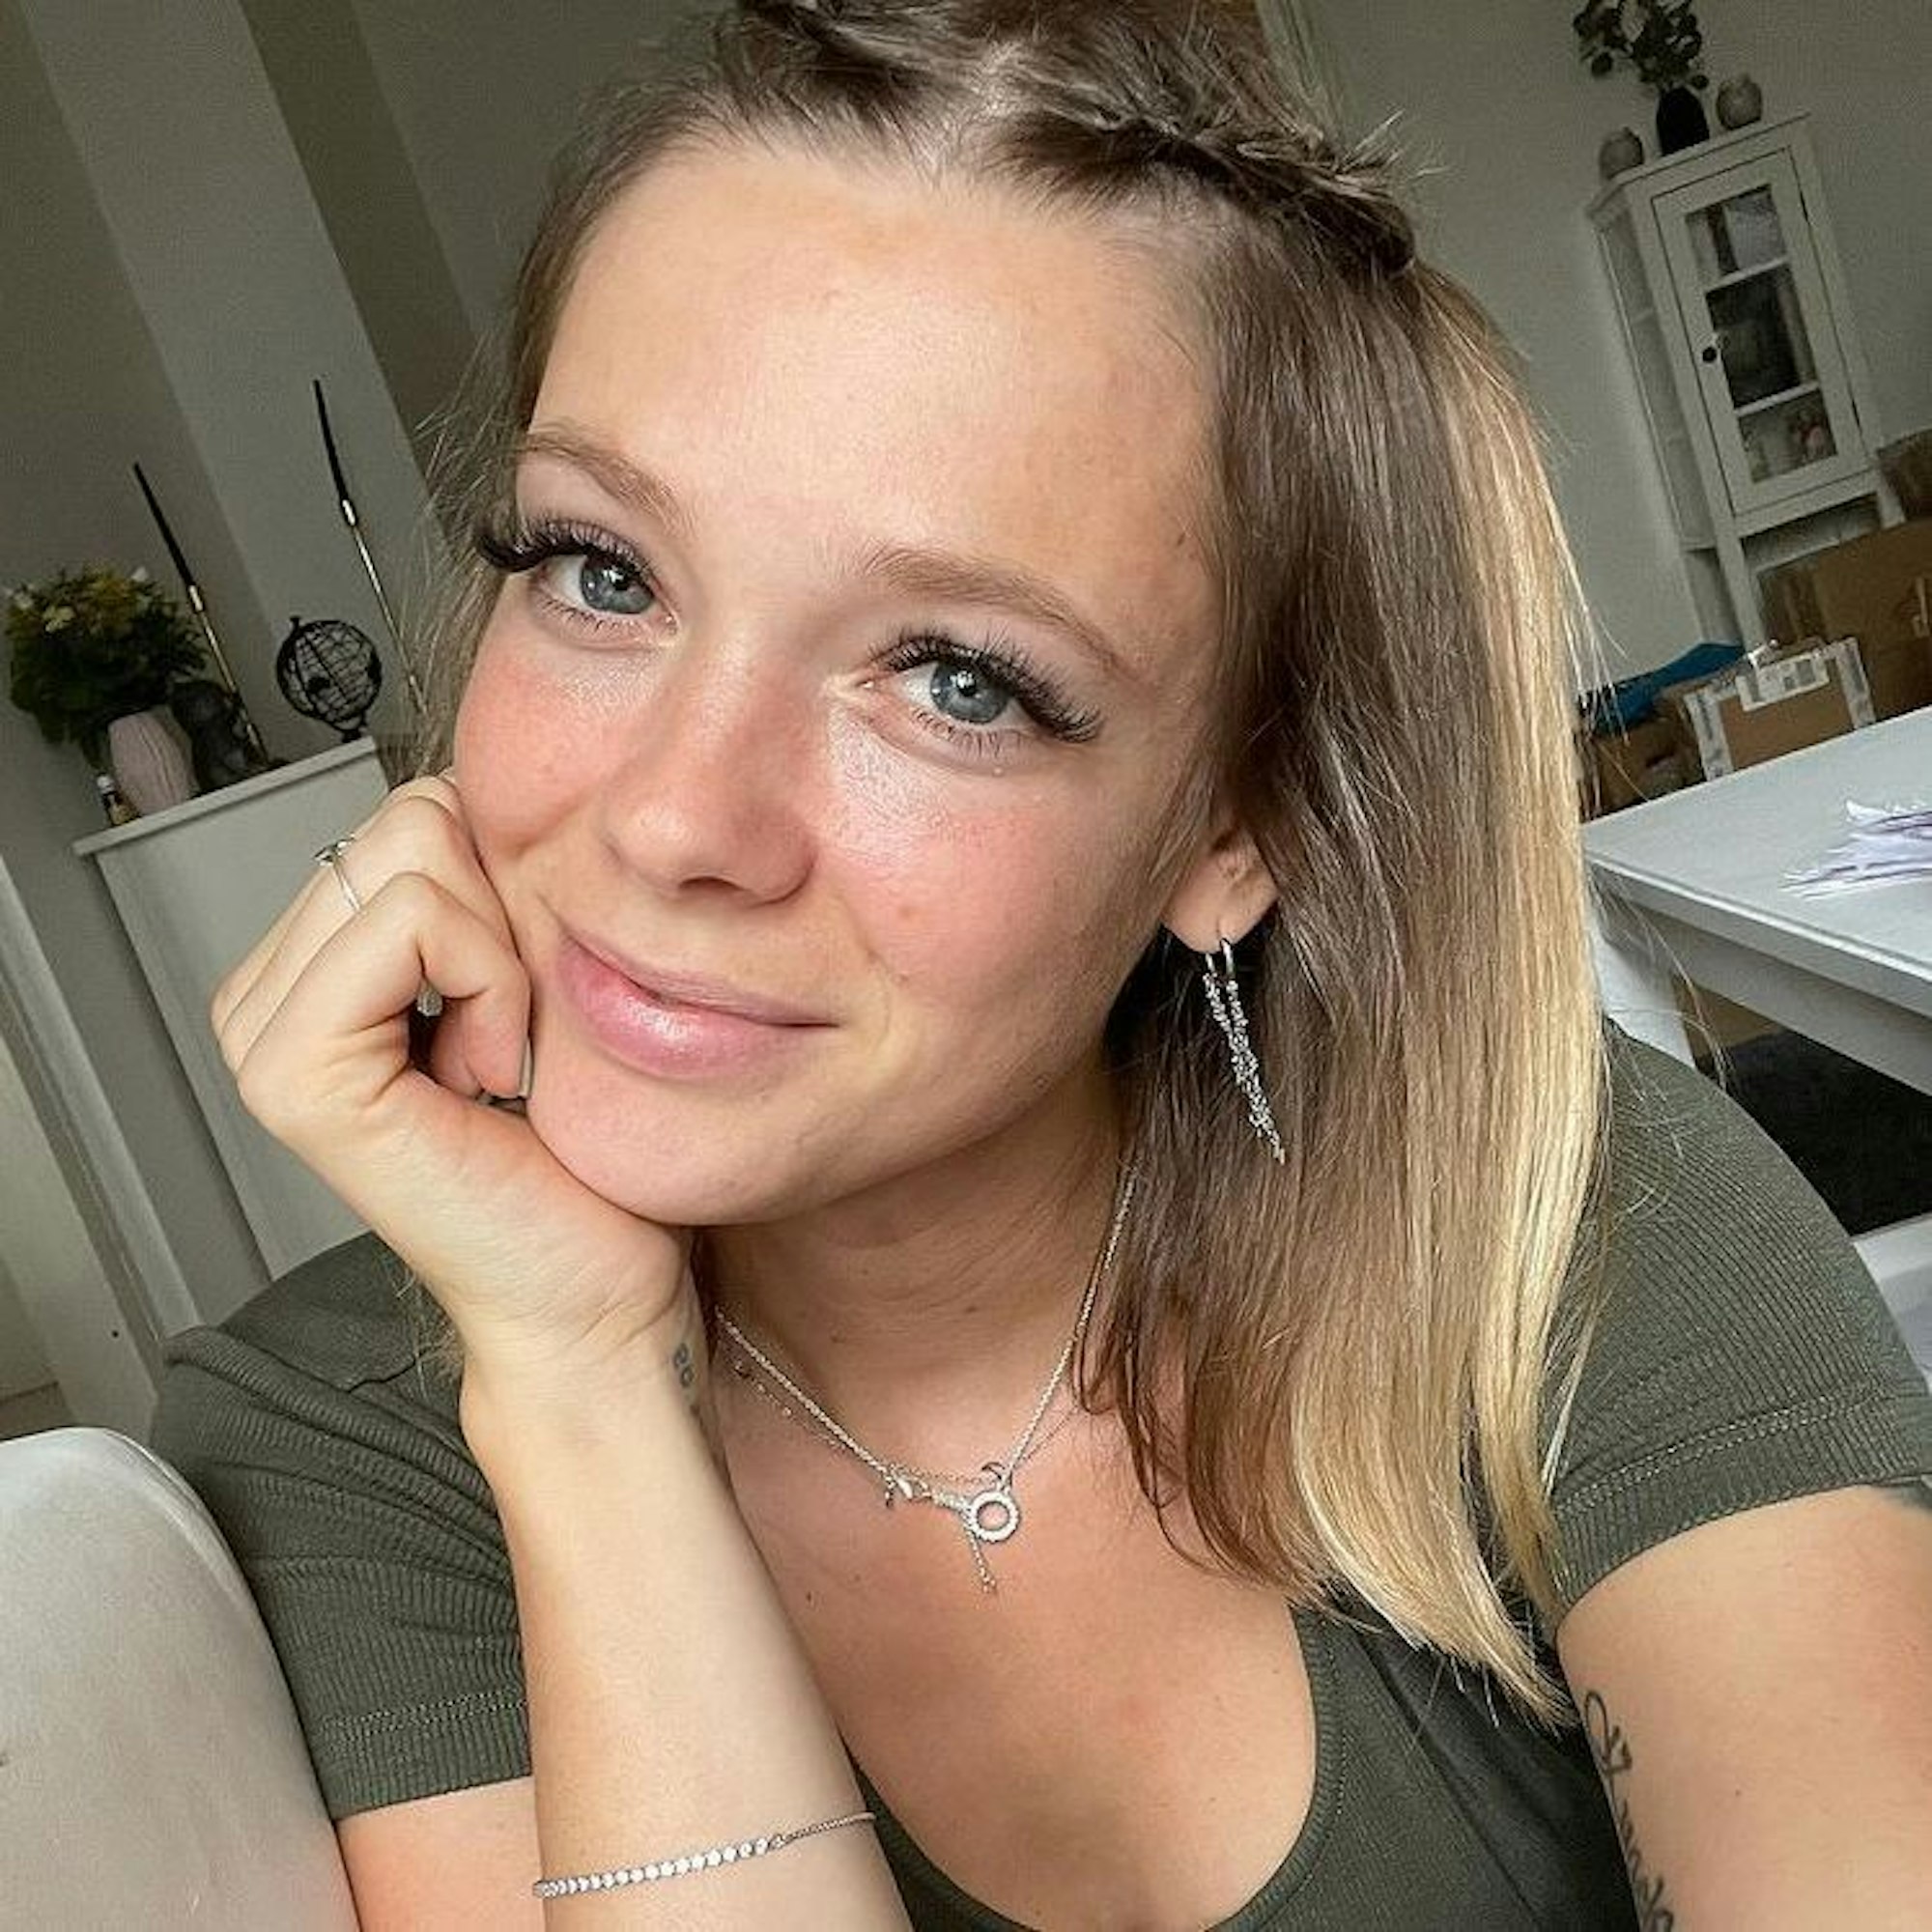 Anne Wünsche, Influencerin, postete dieses Selfie am 6. September 2021 auf Instagram